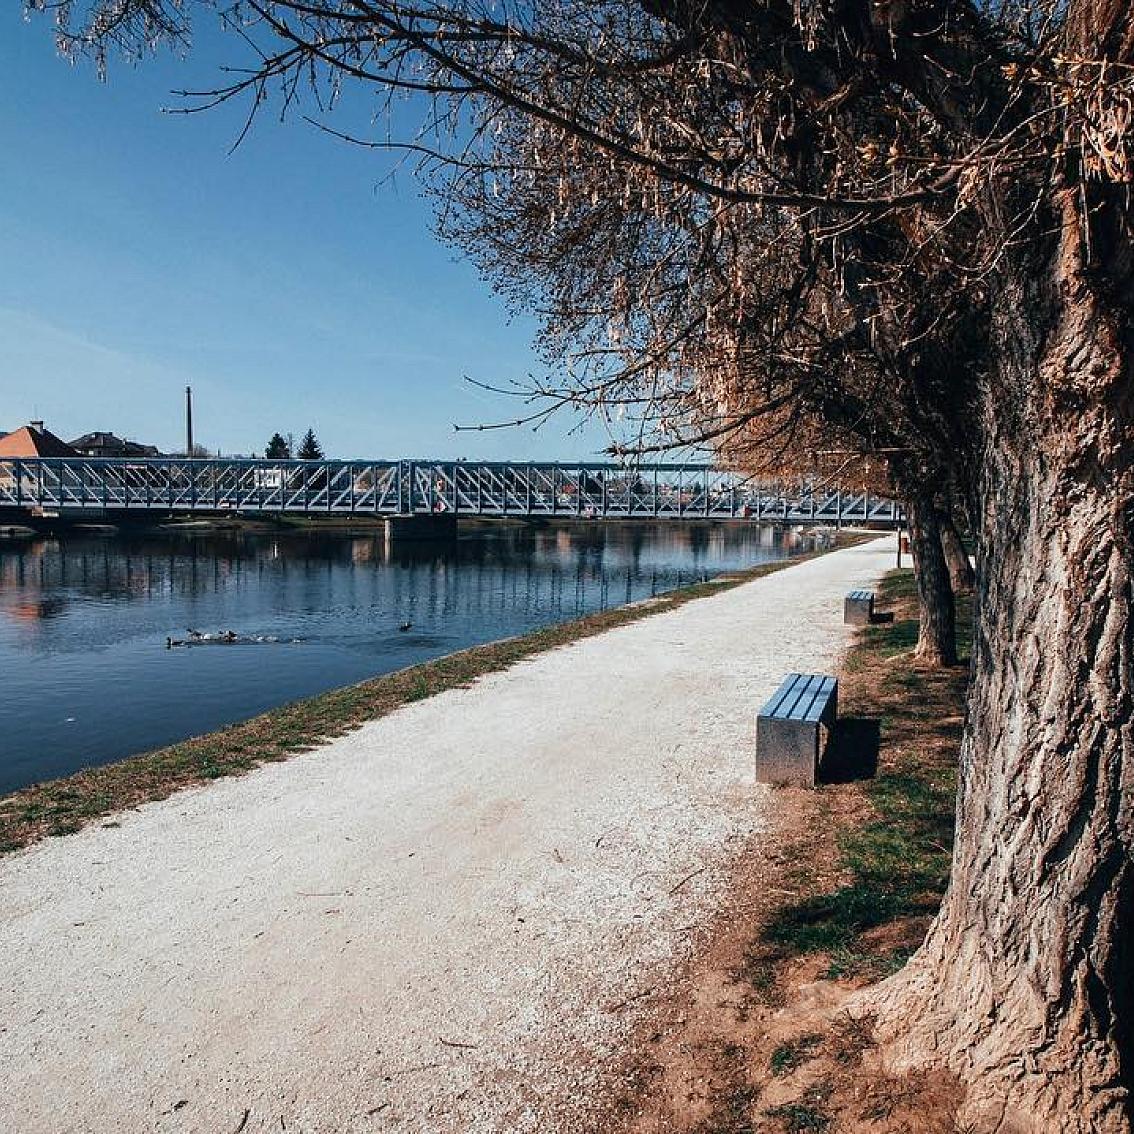 Stezka Vltavy on Instagram: “Co v Týně? Možností je spousta🤗 . Podívat se na kostel, zajít do muzea vltavínů nebo do podzemních chodeb😍. A nebo se jen pomalu projít…”